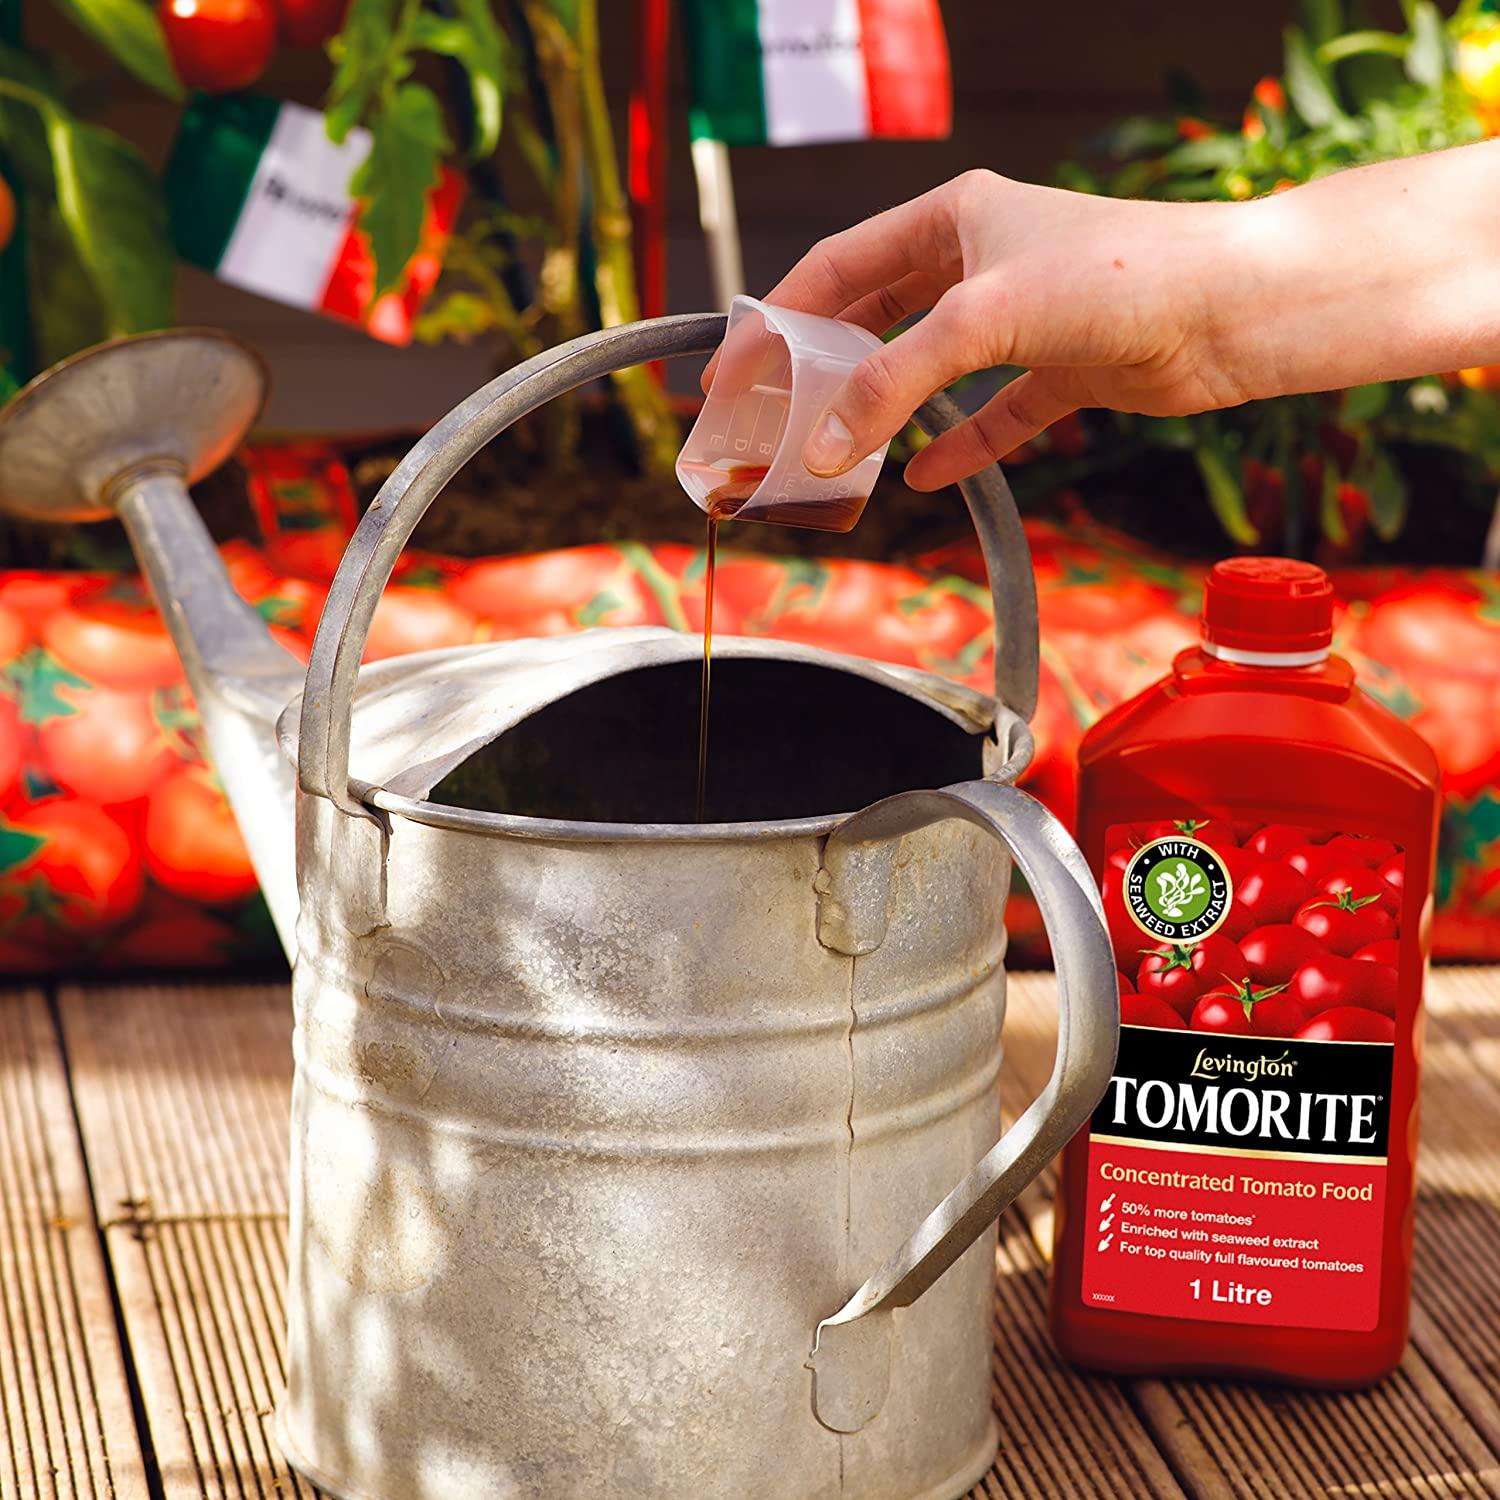 Tomorite tomato food lifestyle